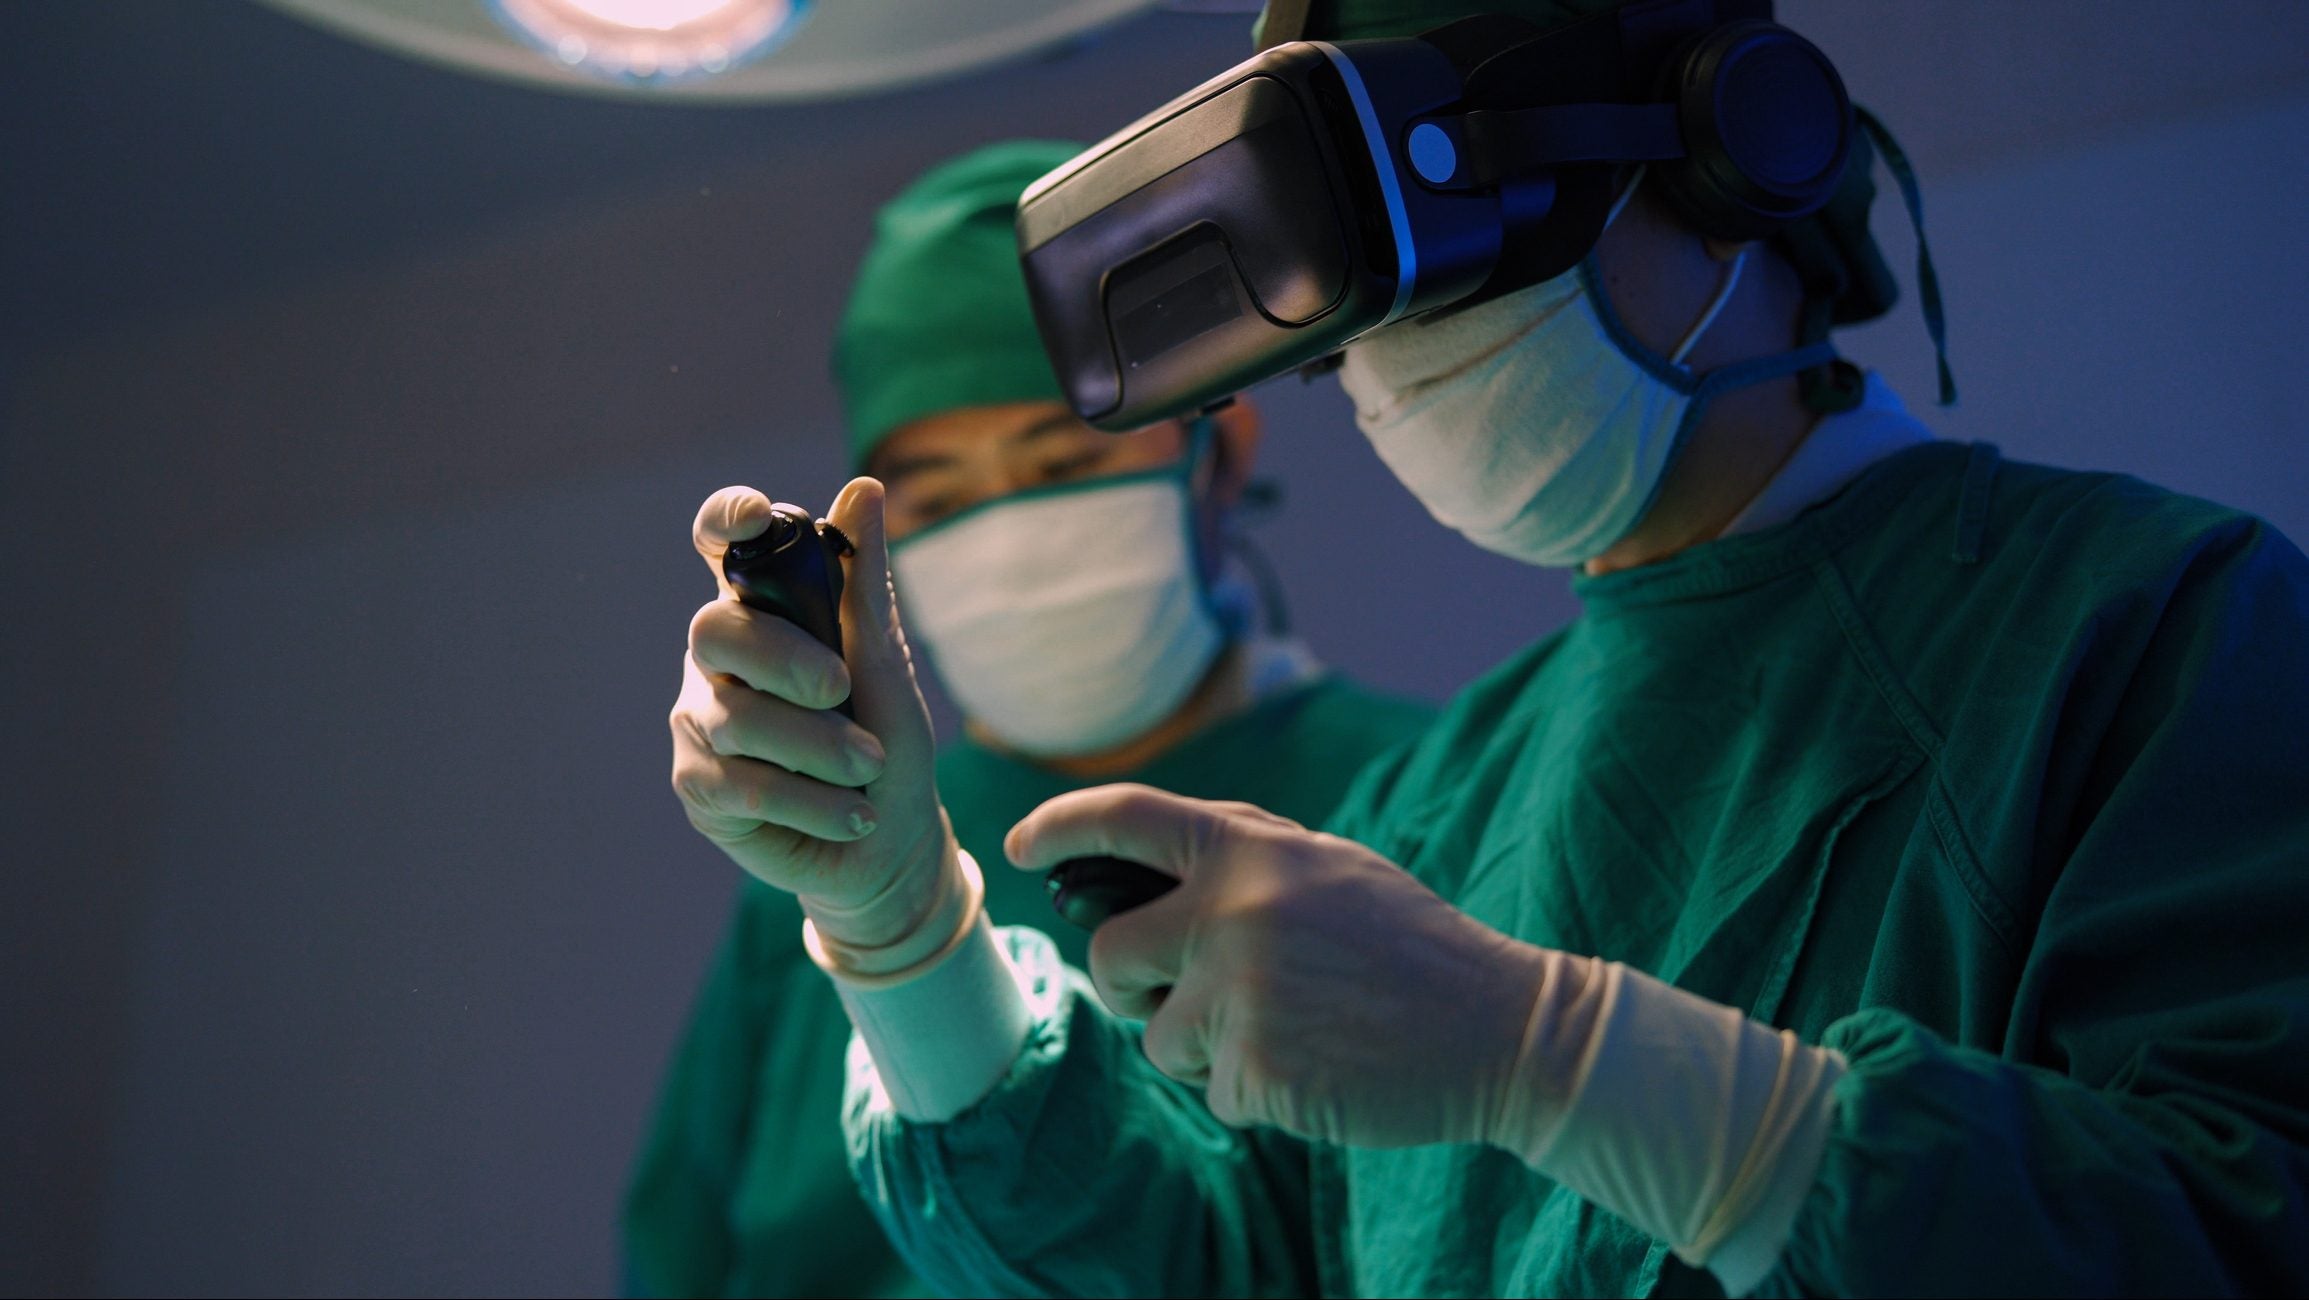 Ca phẫu thuật nhi khoa đầu tiên được thực hiện bằng tai nghe thực tế ảo VisAR